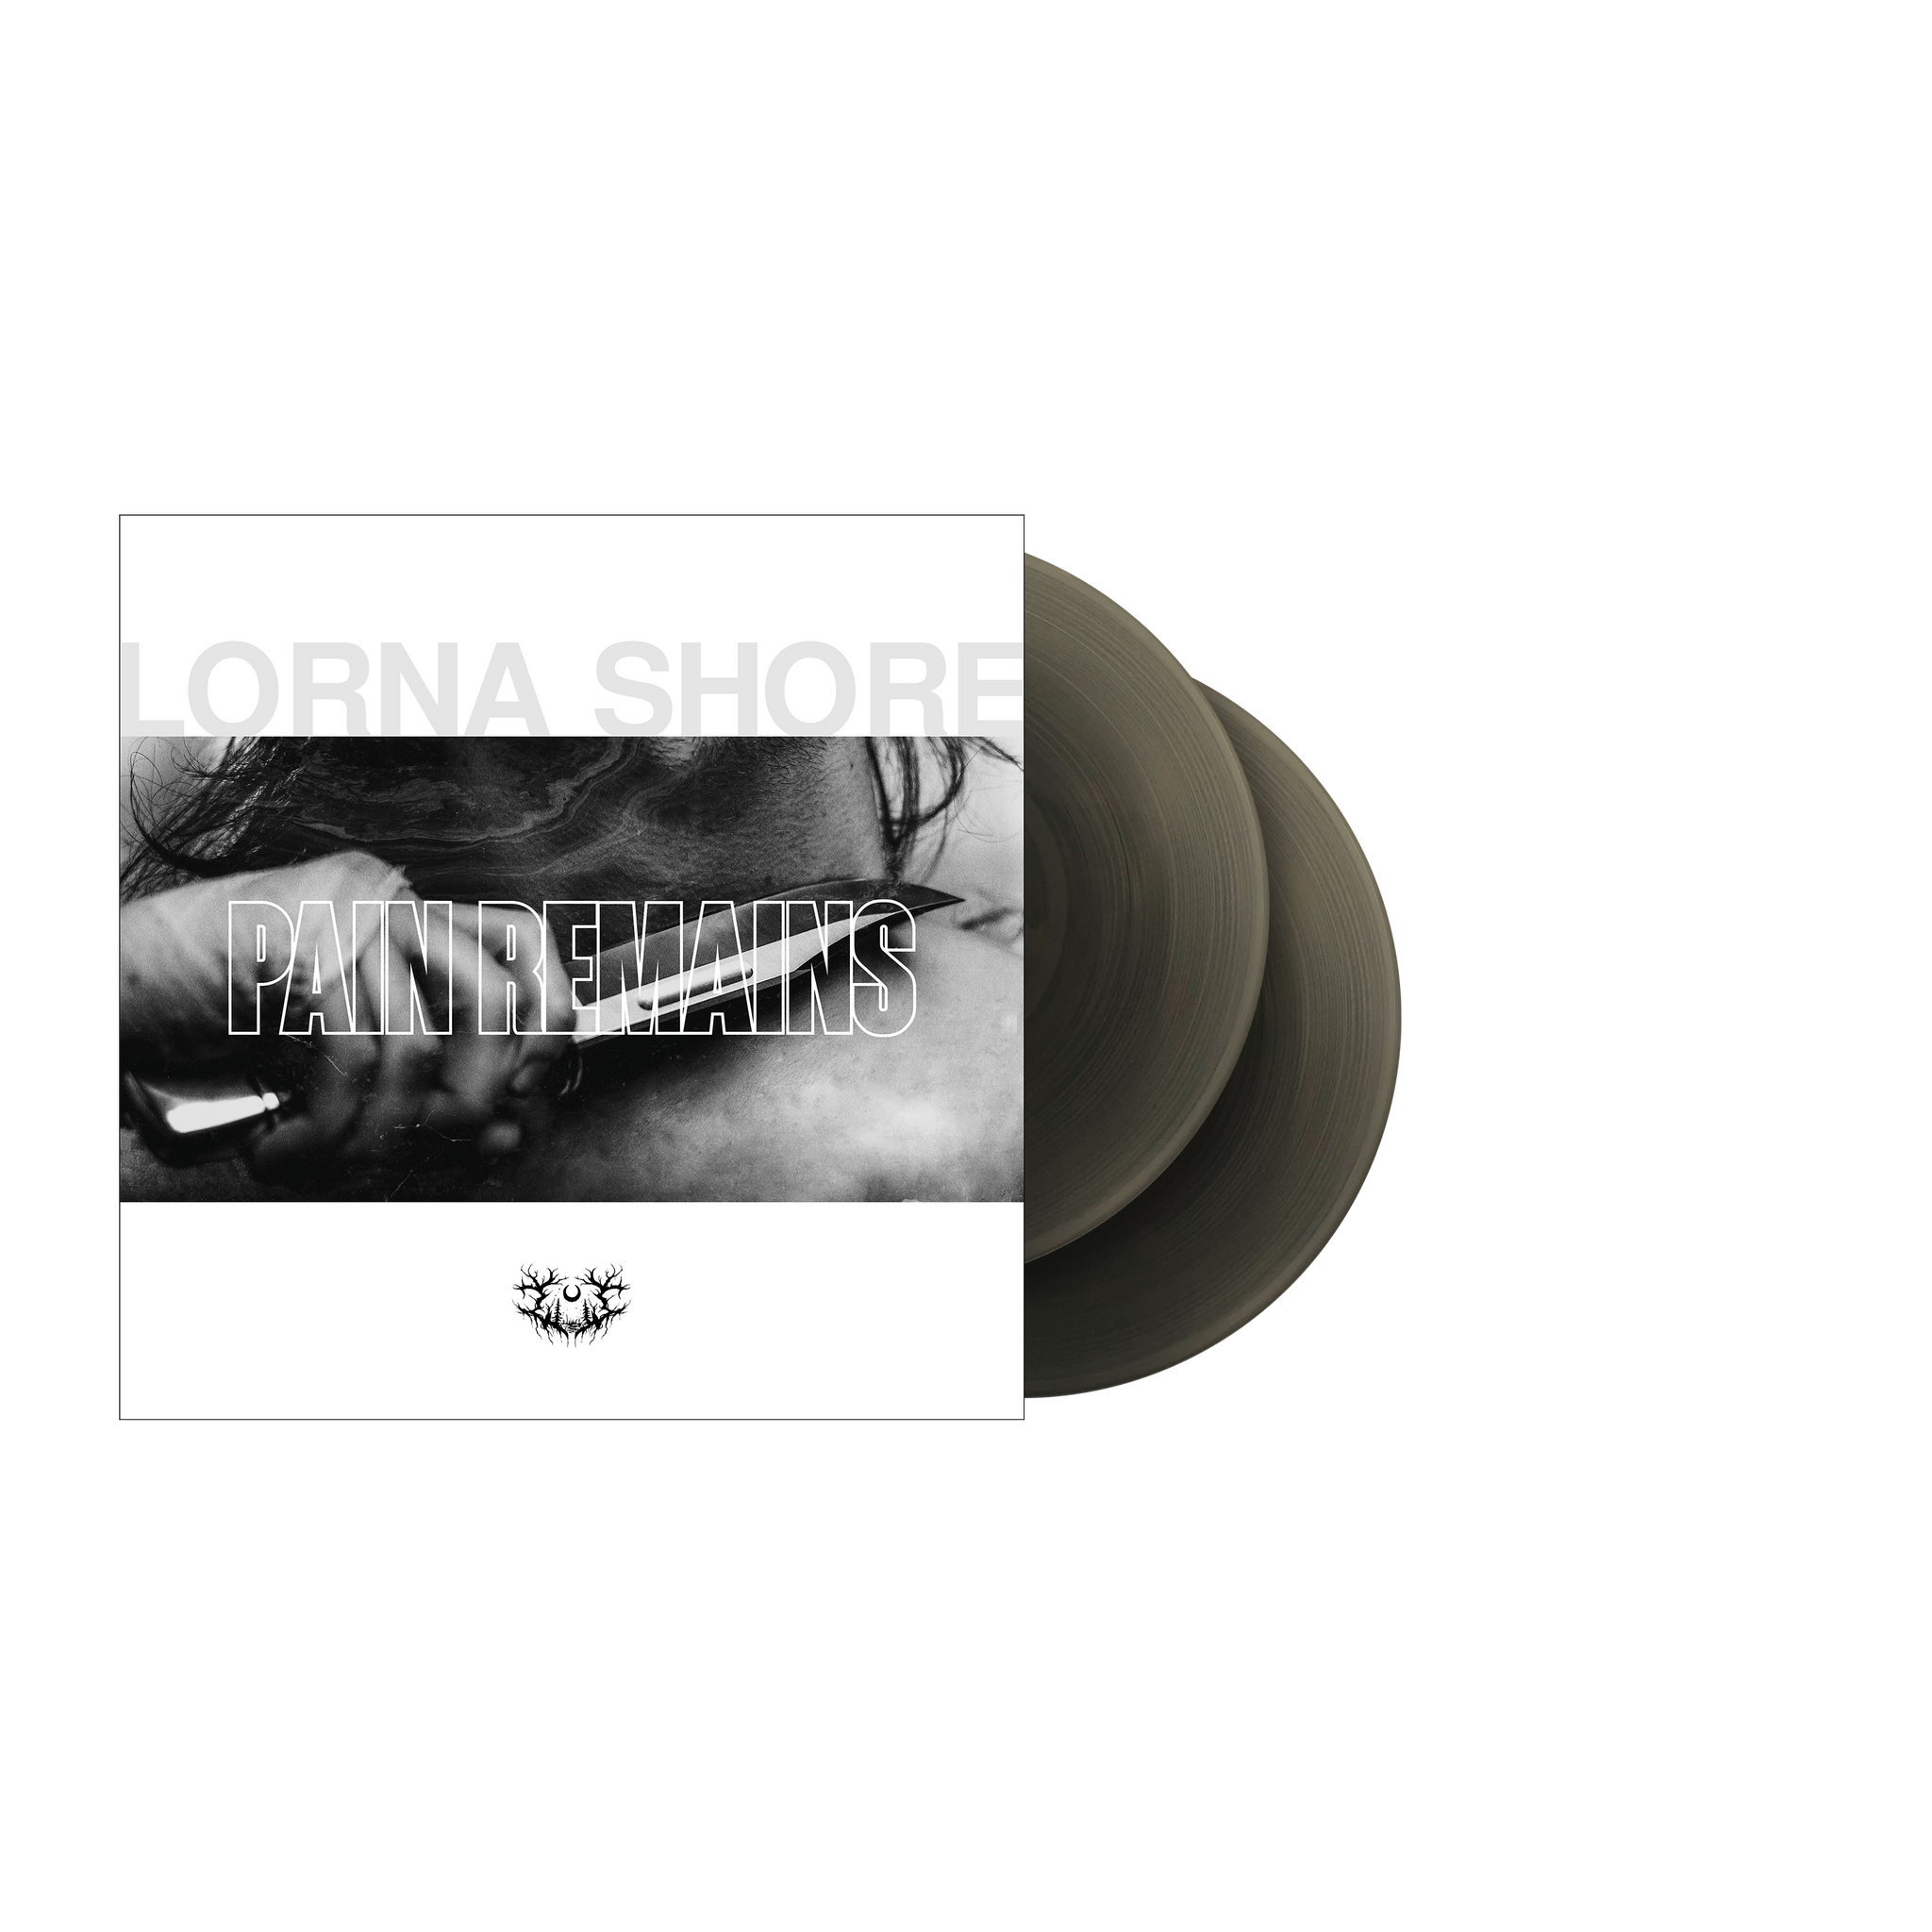 LORNA SHORE - Pain Remains - Transparent Black Ice Vinyl 2xLP